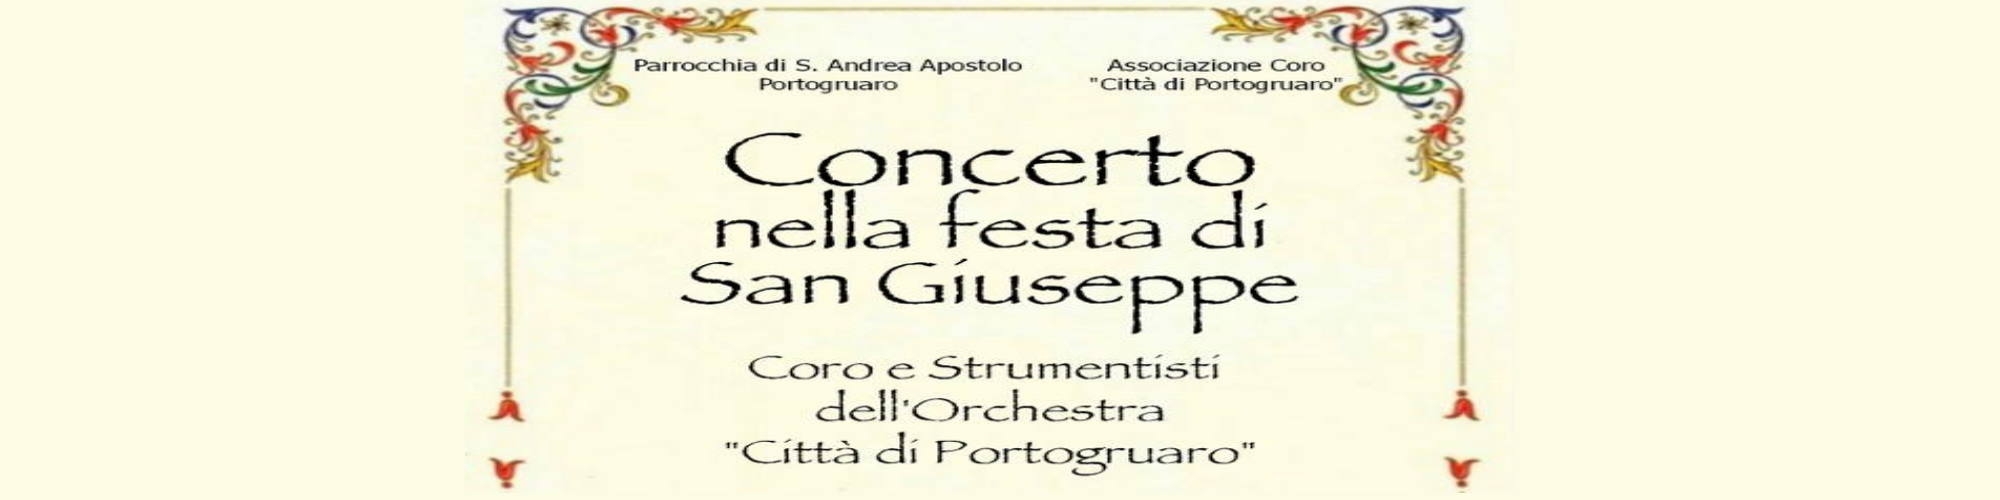 Immagine Concerto nella festa di San Giuseppe